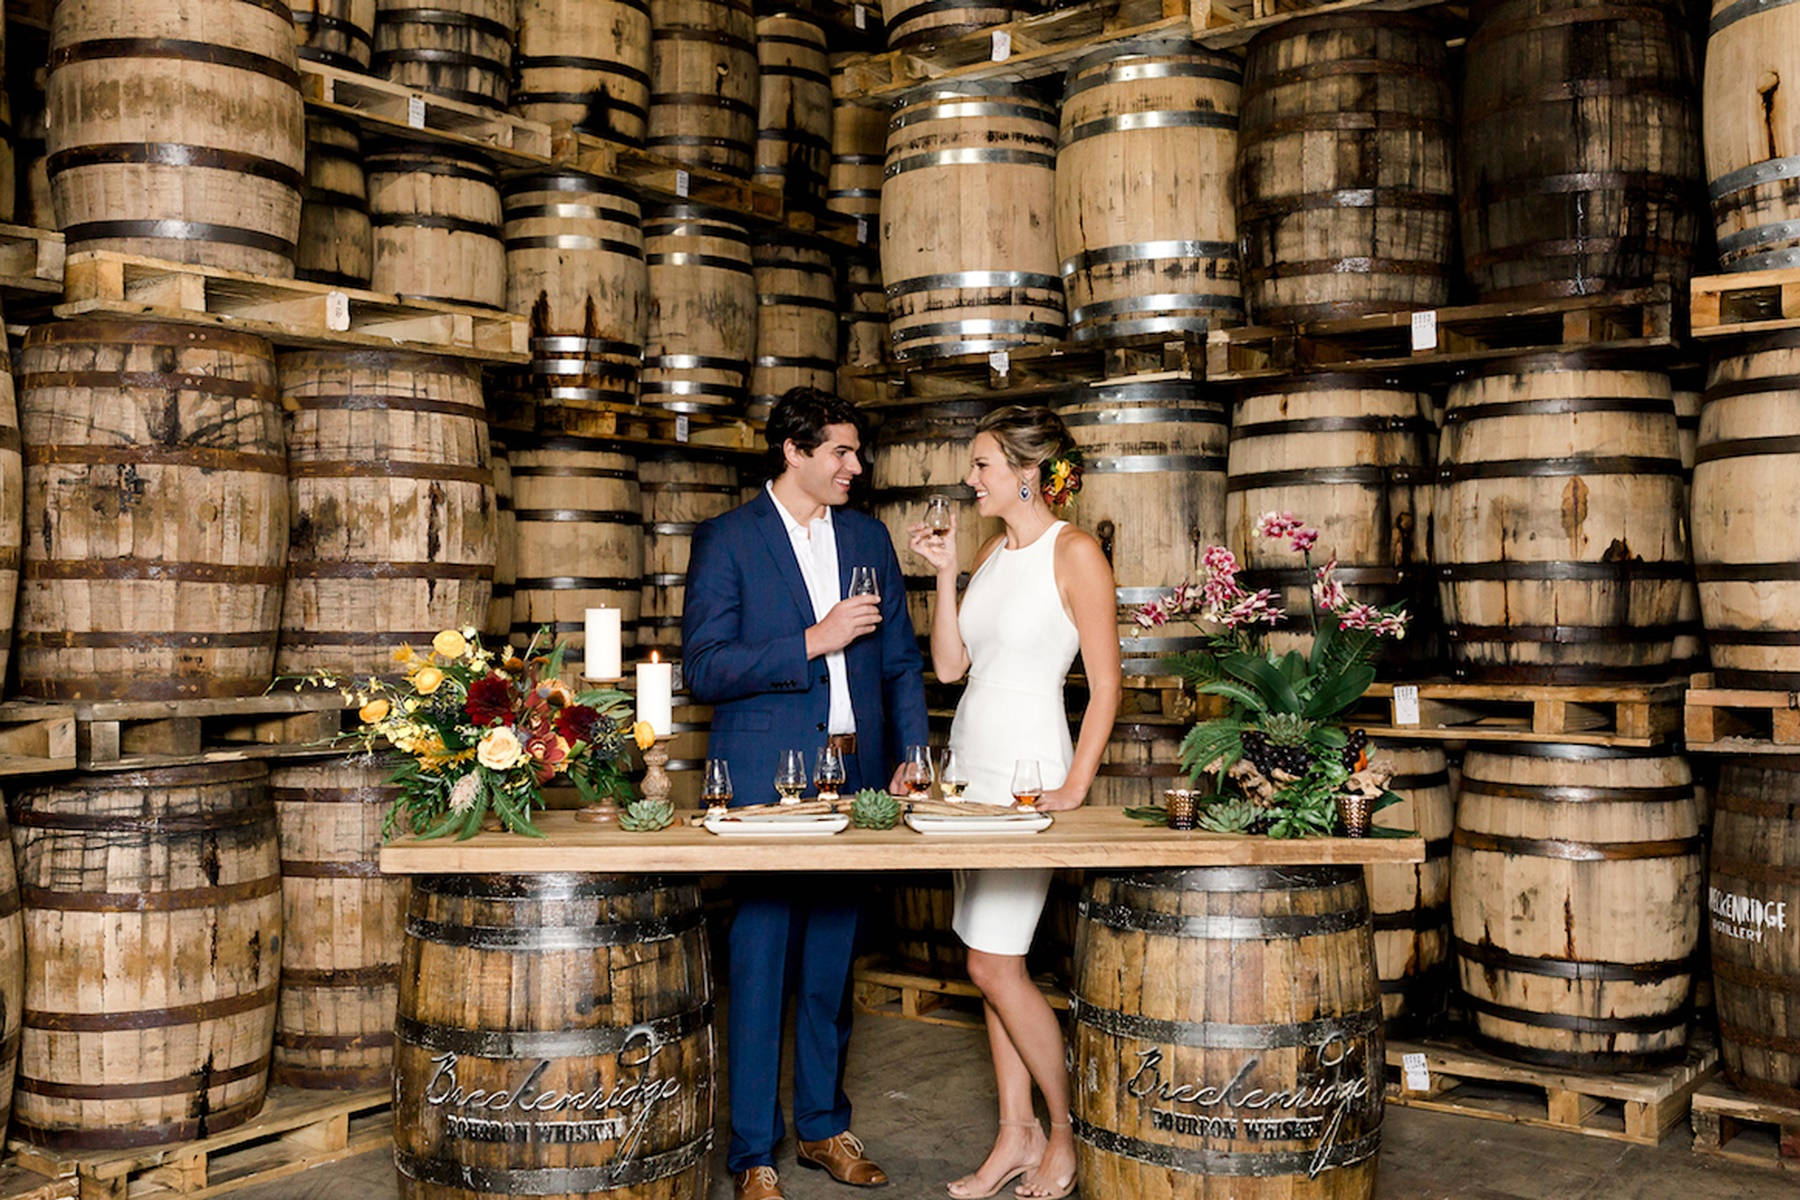 Breckenridge Distillery Couple Date Liquor Tasting Wallpaper